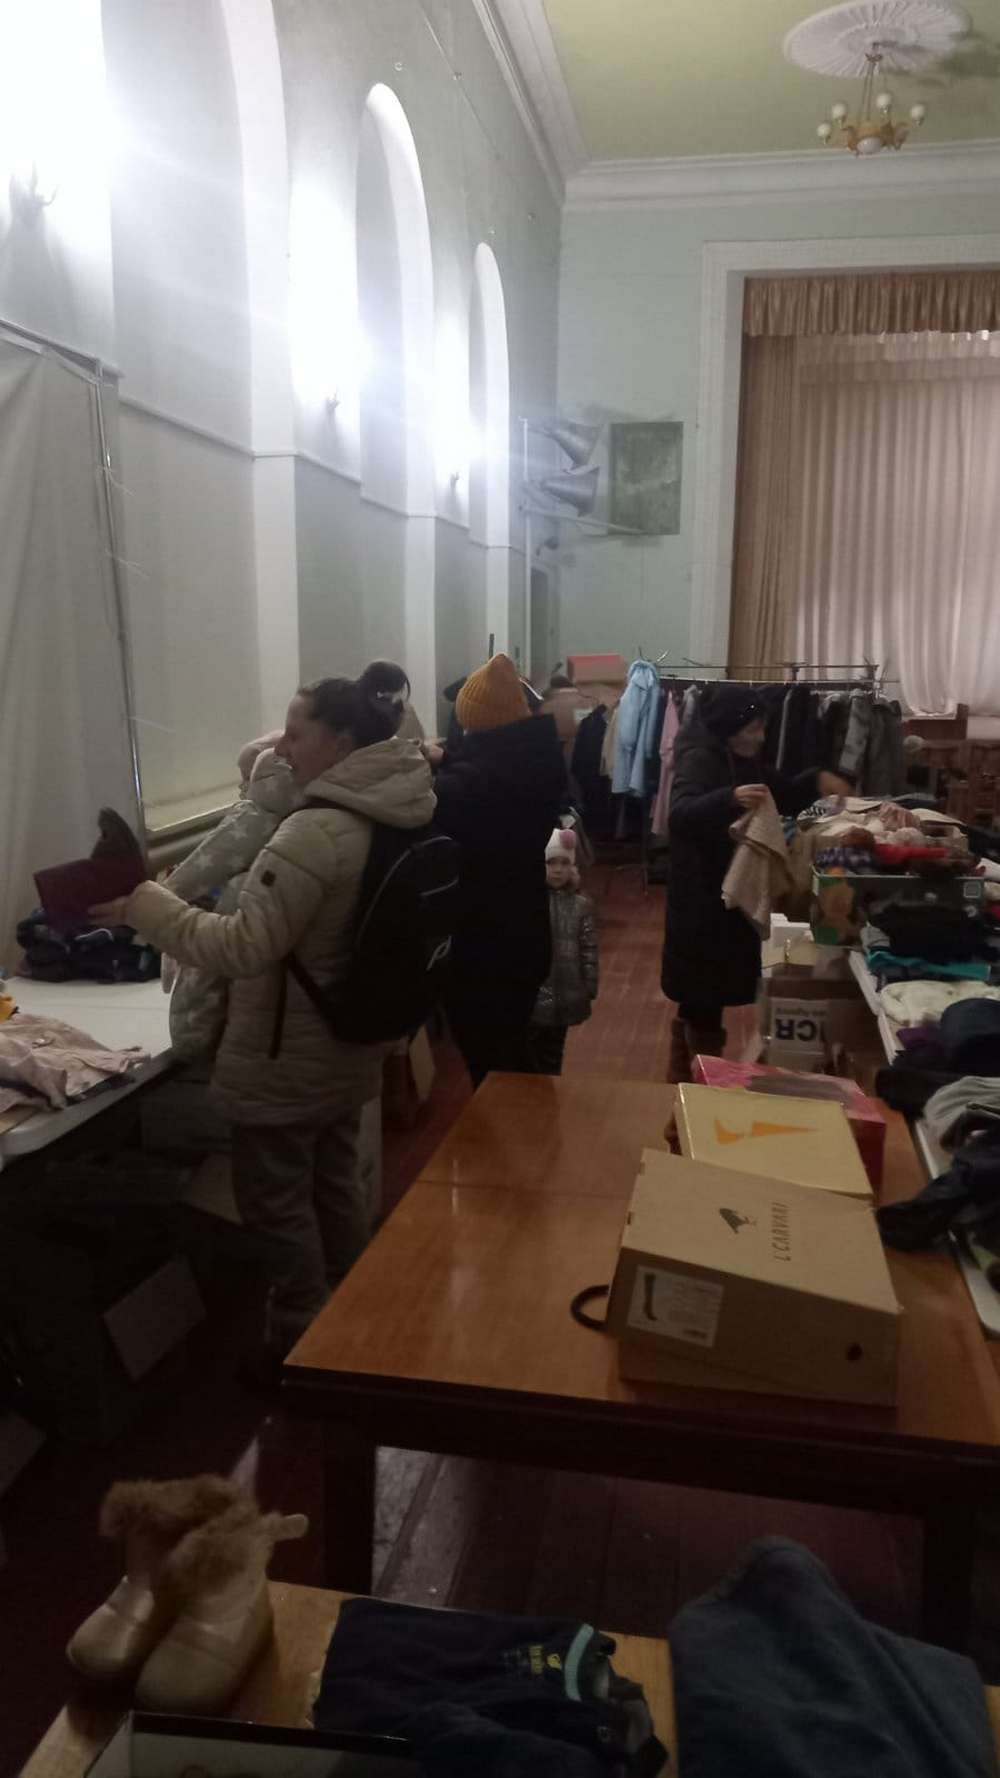 Мирівська громада отримала теплий одяг від благодійників: куртки, шапки, светри, шарфи (фото)